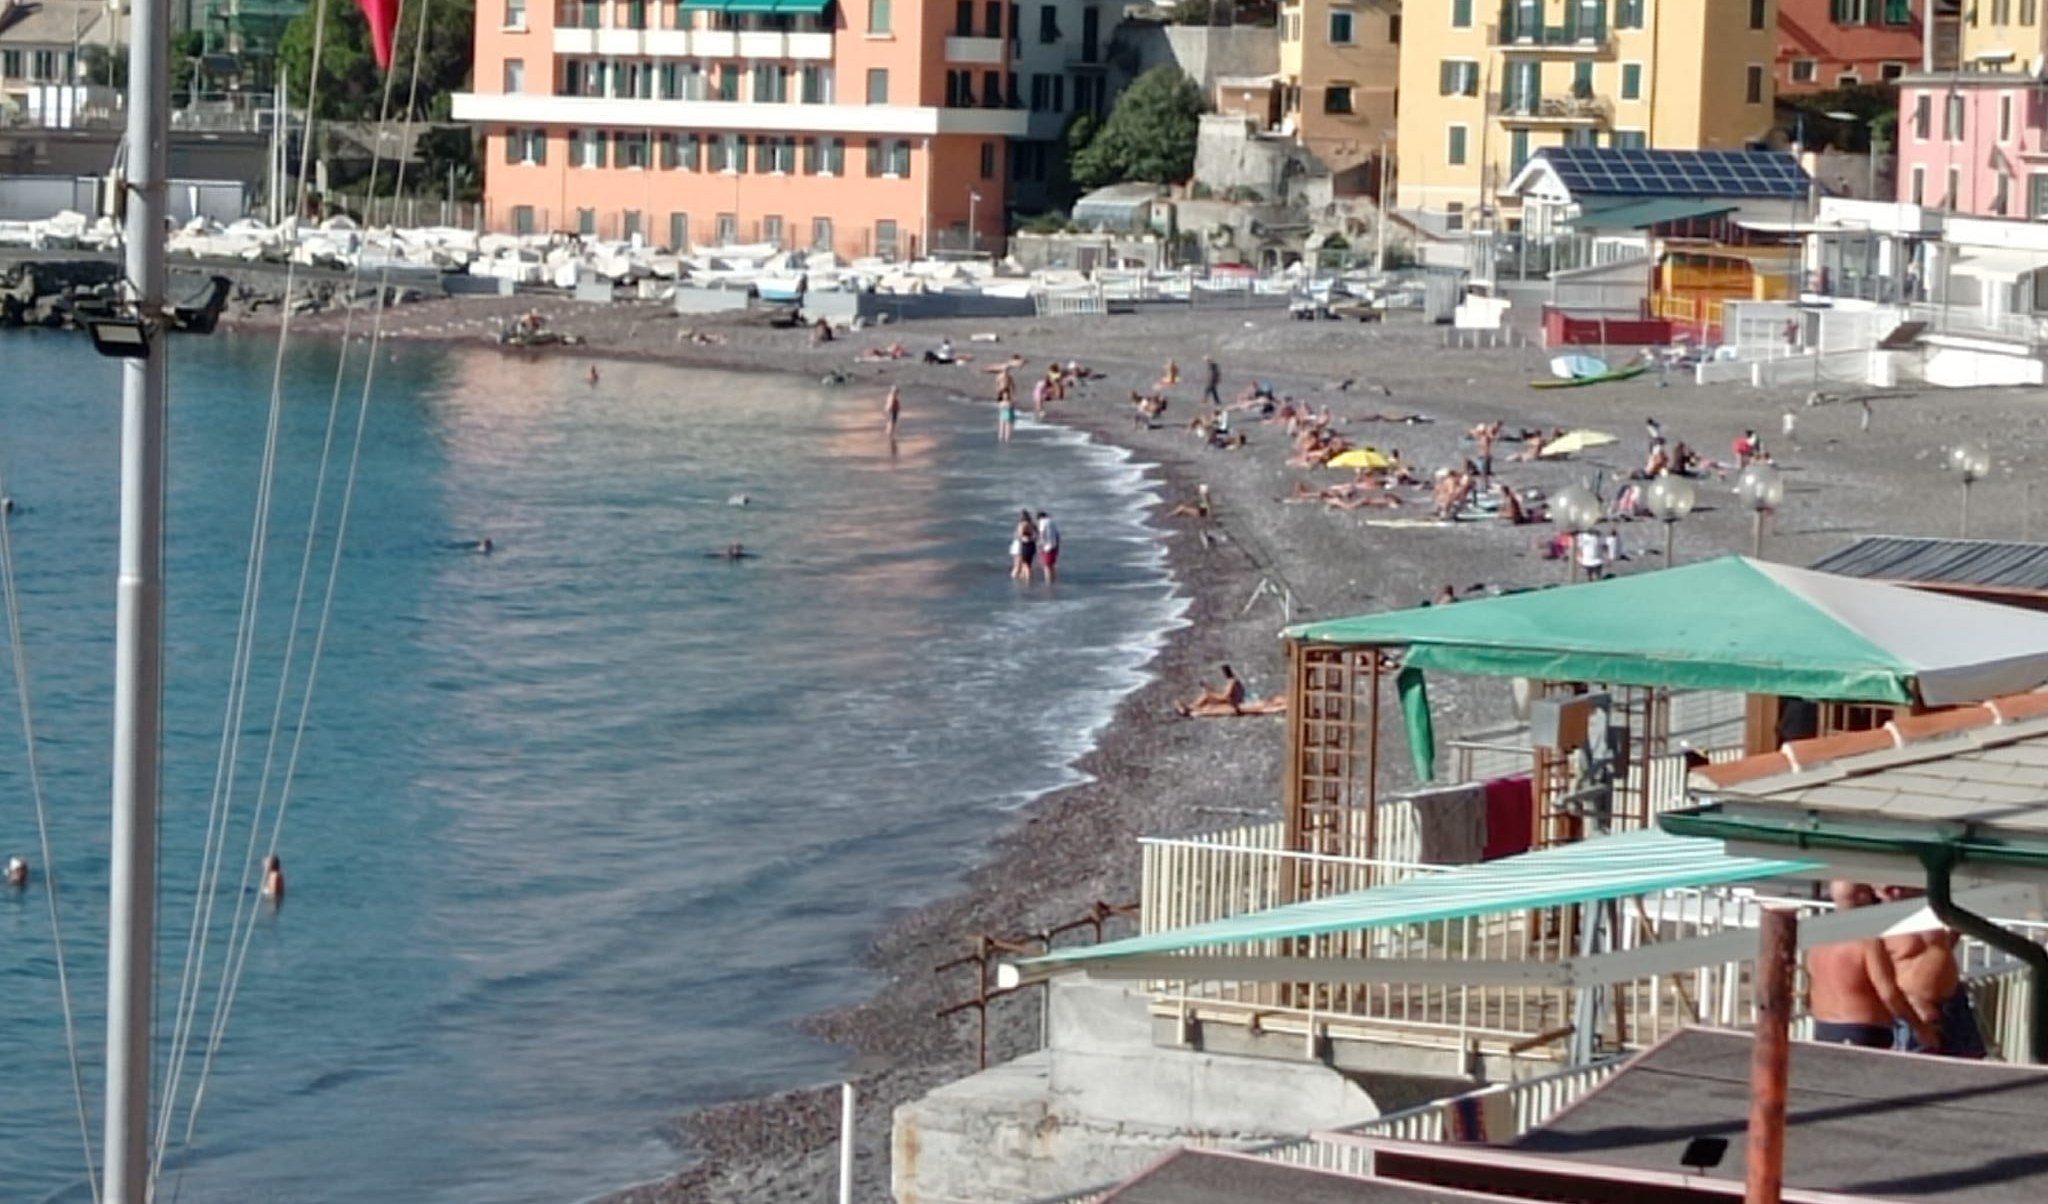 Caldo fuori stagione in Liguria, sfiorati i 30 gradi e a Genova c'è chi fa il bagno in mare 